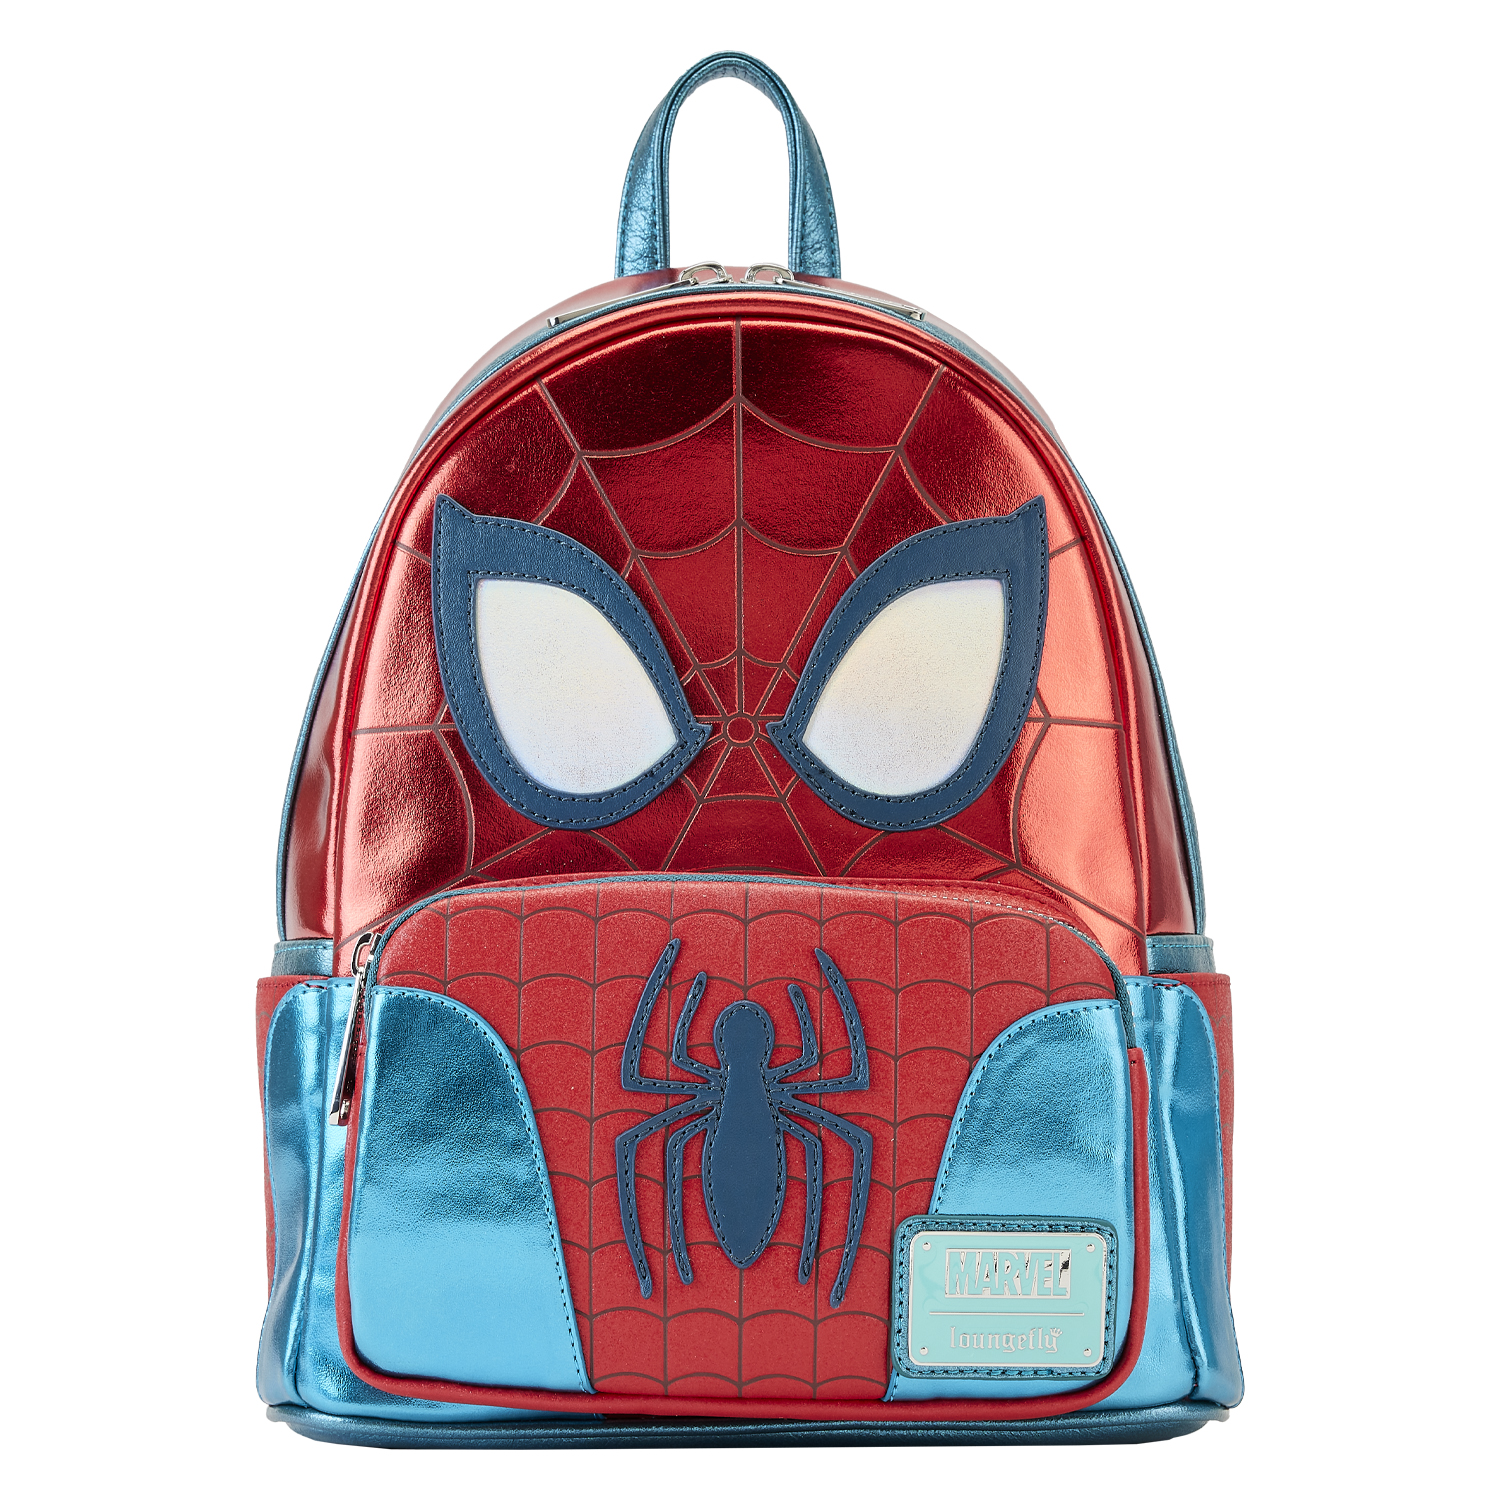 Marvel Sac à dos Spiderman  Spidey et ses amis incroyables sac à